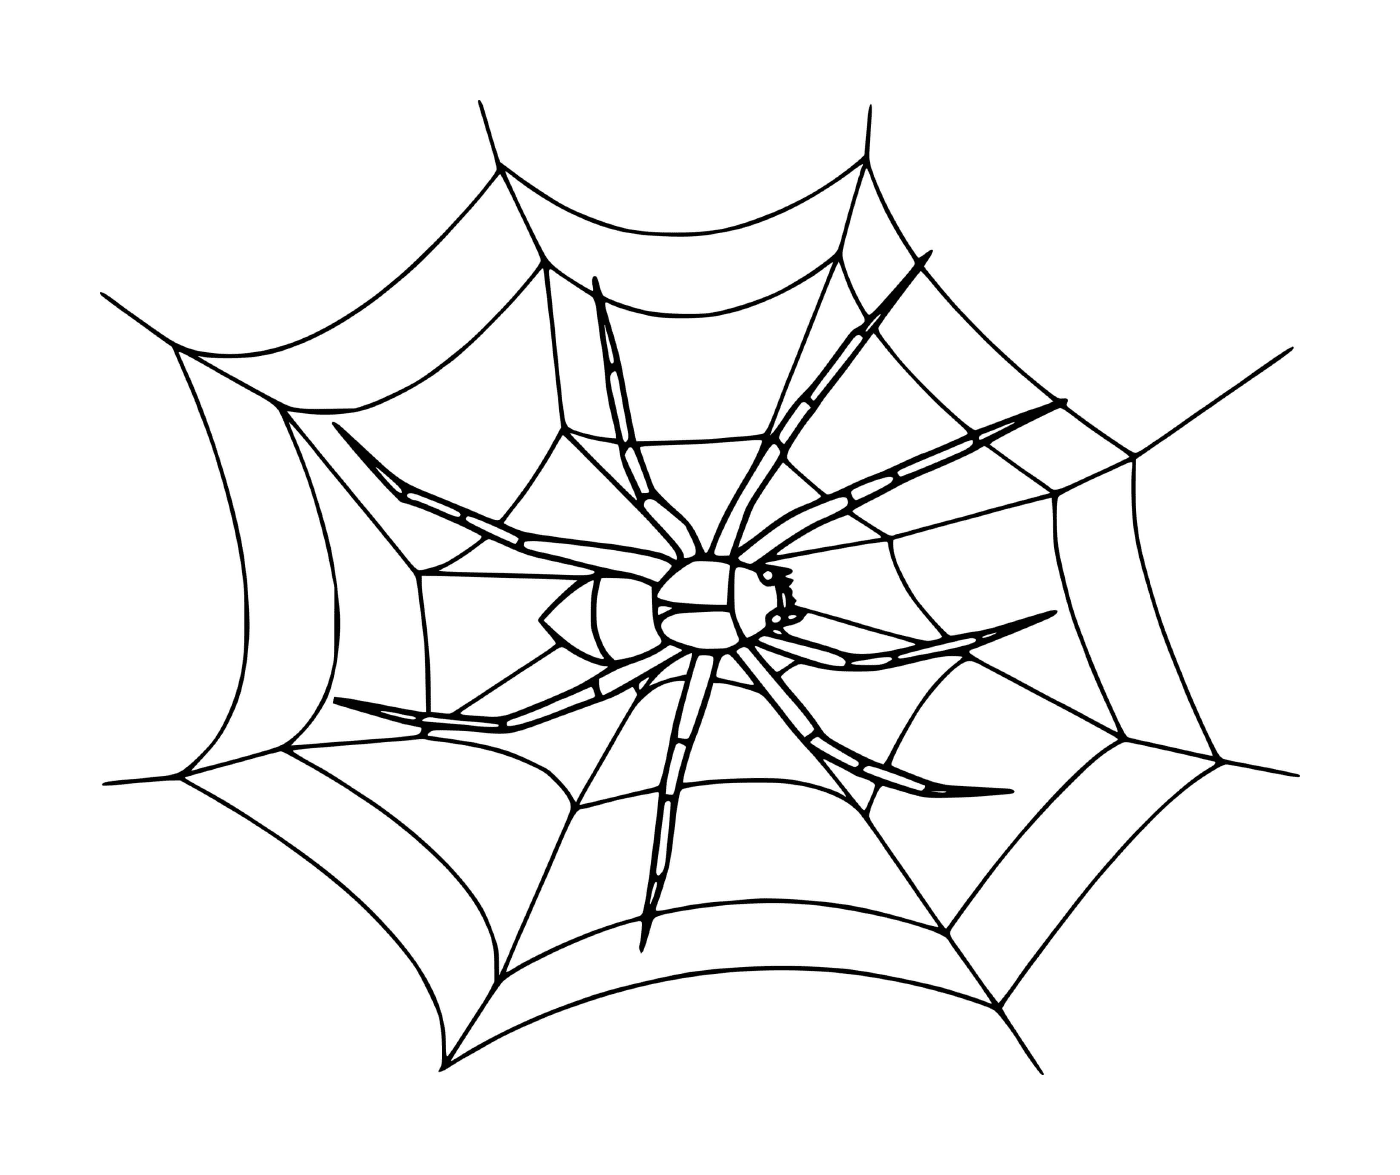  一个现实的蜘蛛网 